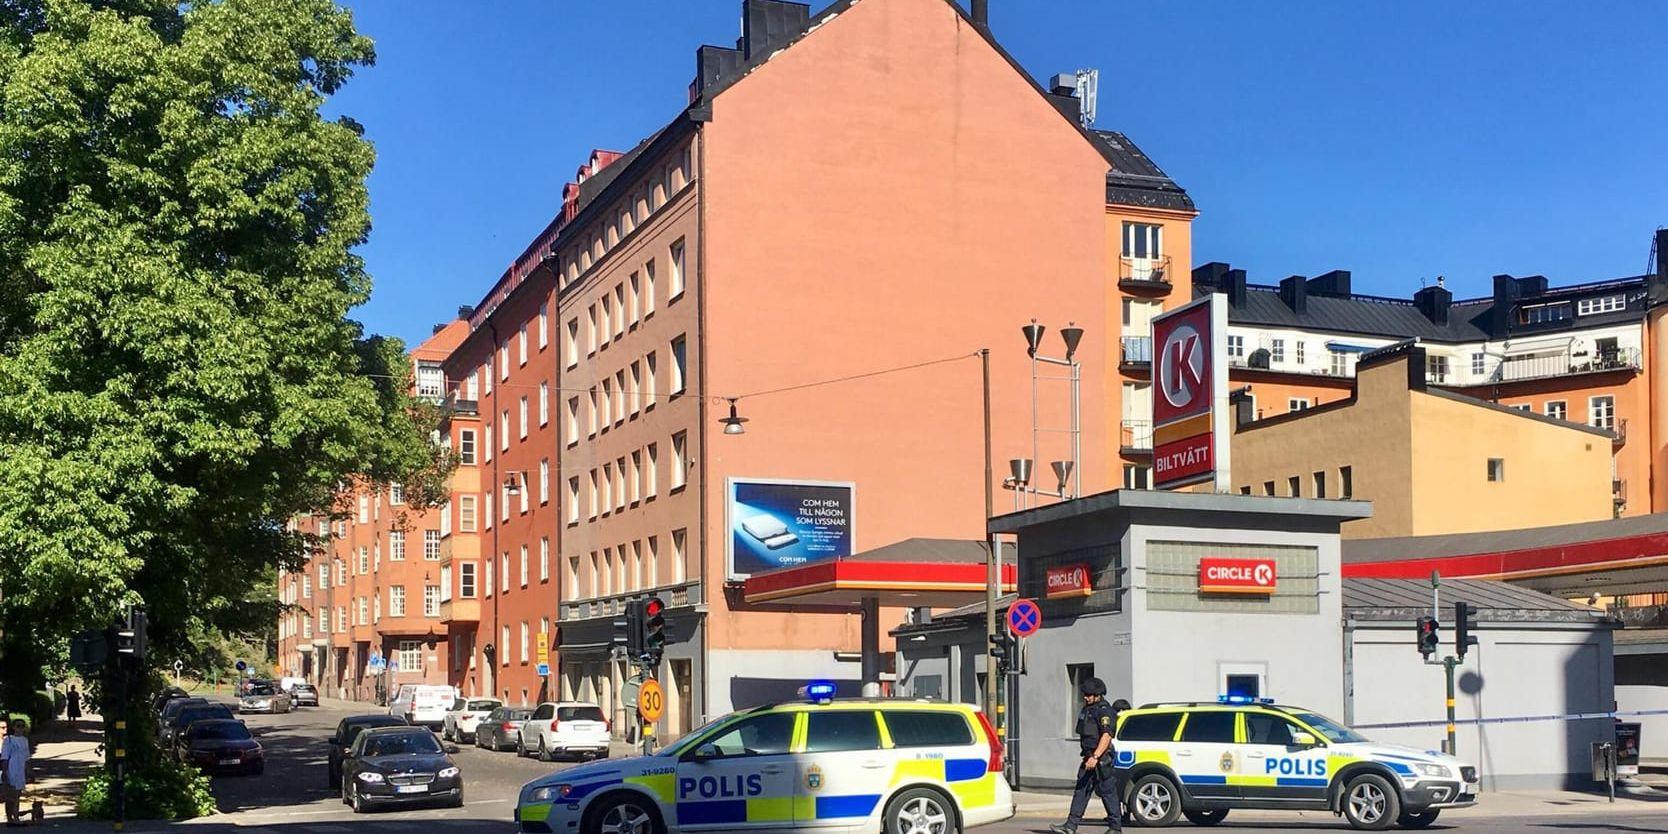 En kokosnöt fylld med metalliknande föremål ledde till att ett kvarter i centrala Stockholm spärrades av.